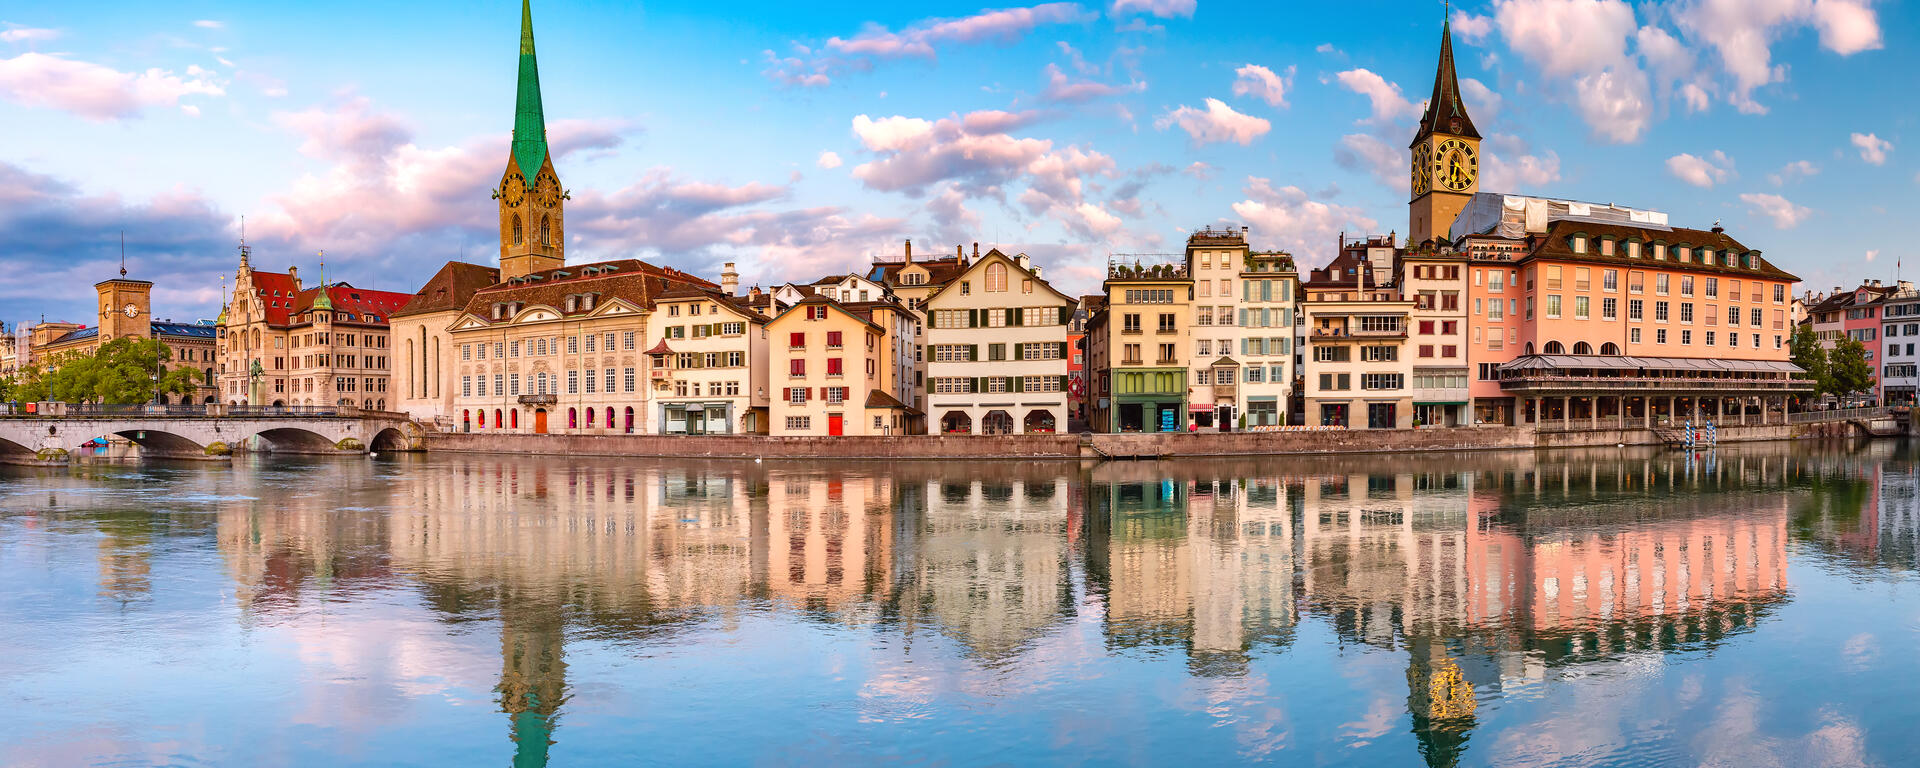 City view of Zurich 